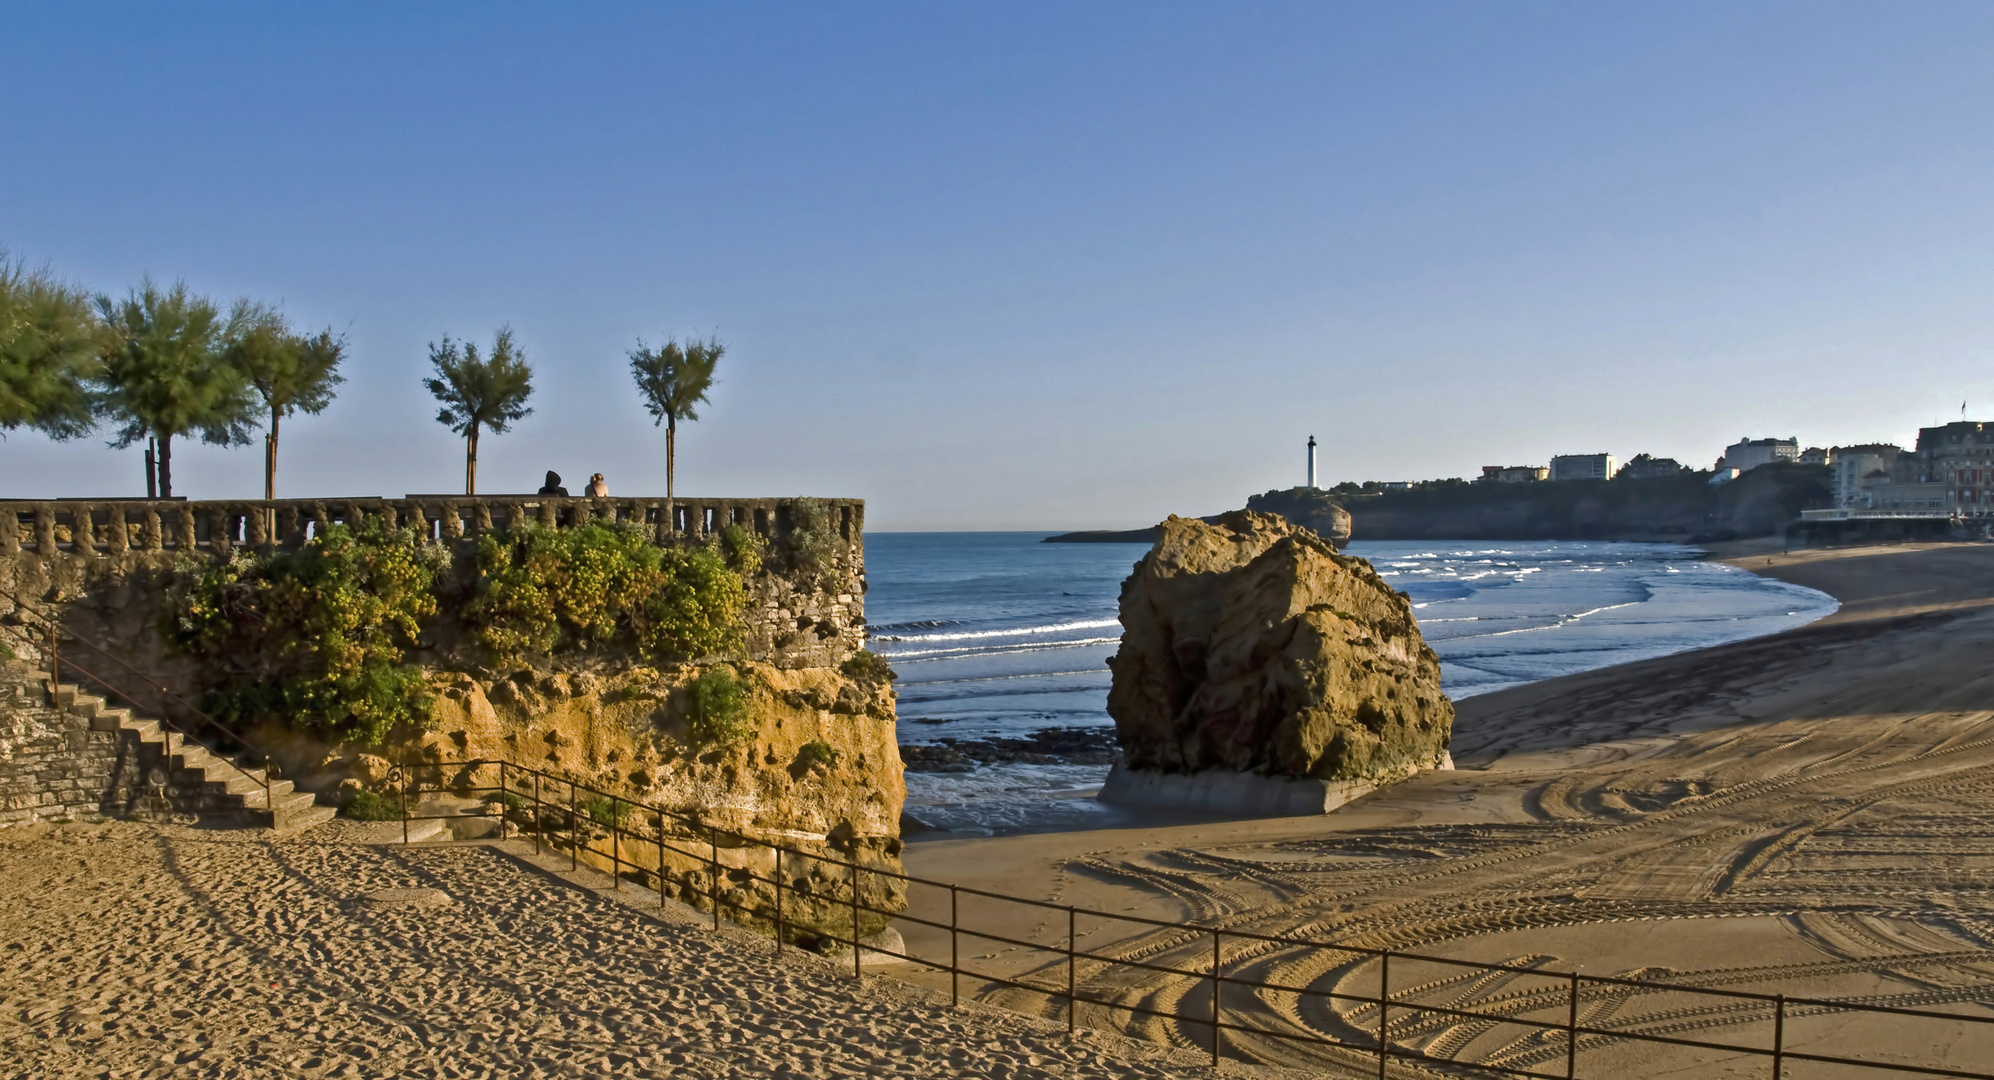 Impressions de Biarritz 2 -- Eindrücke von Biarritz